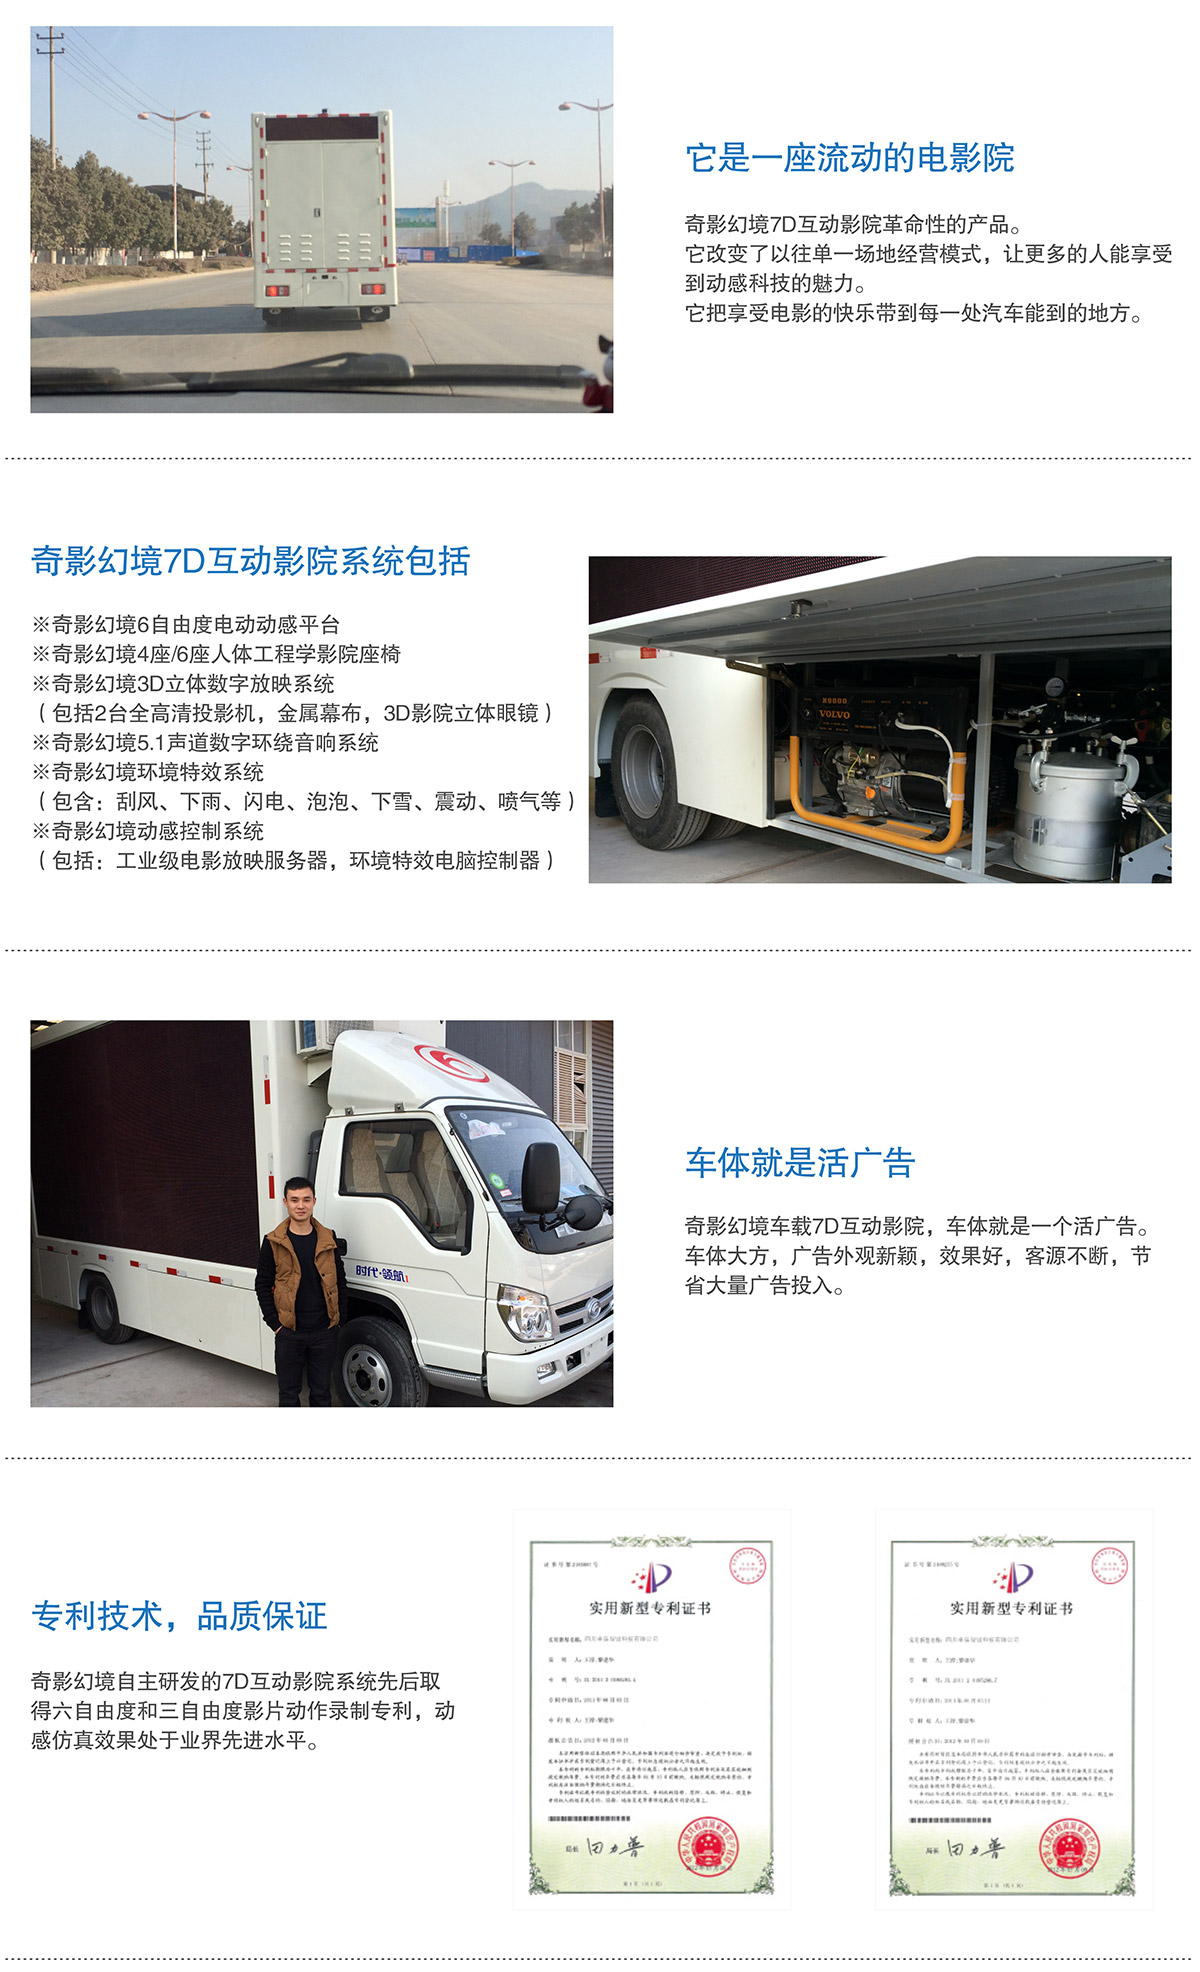 广东省广州奇影幻境7D互动电影车就是活广告.jpg